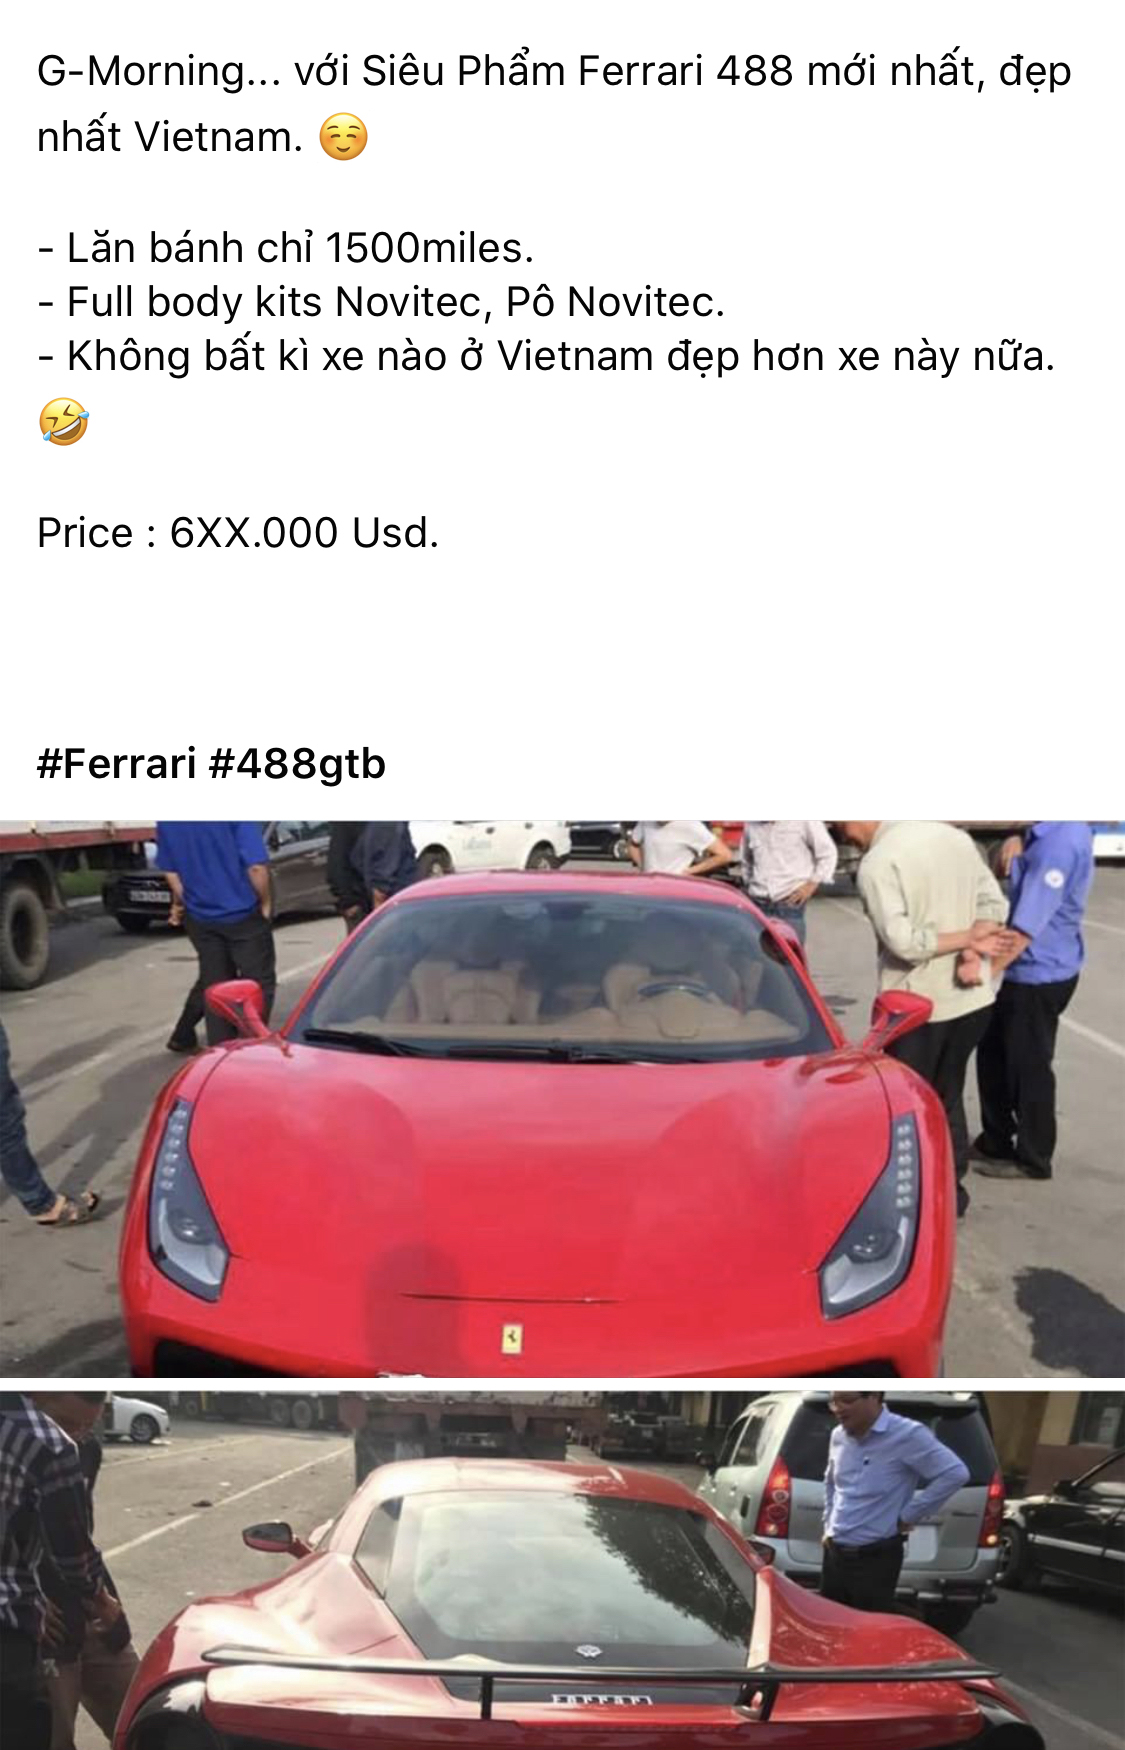 Ferrari 488 GTB biển số ngũ quý 5 cùng gói độ hơn 1 tỷ đồng độc đáo được bán lại với mức giá gây chú ý - Ảnh 1.